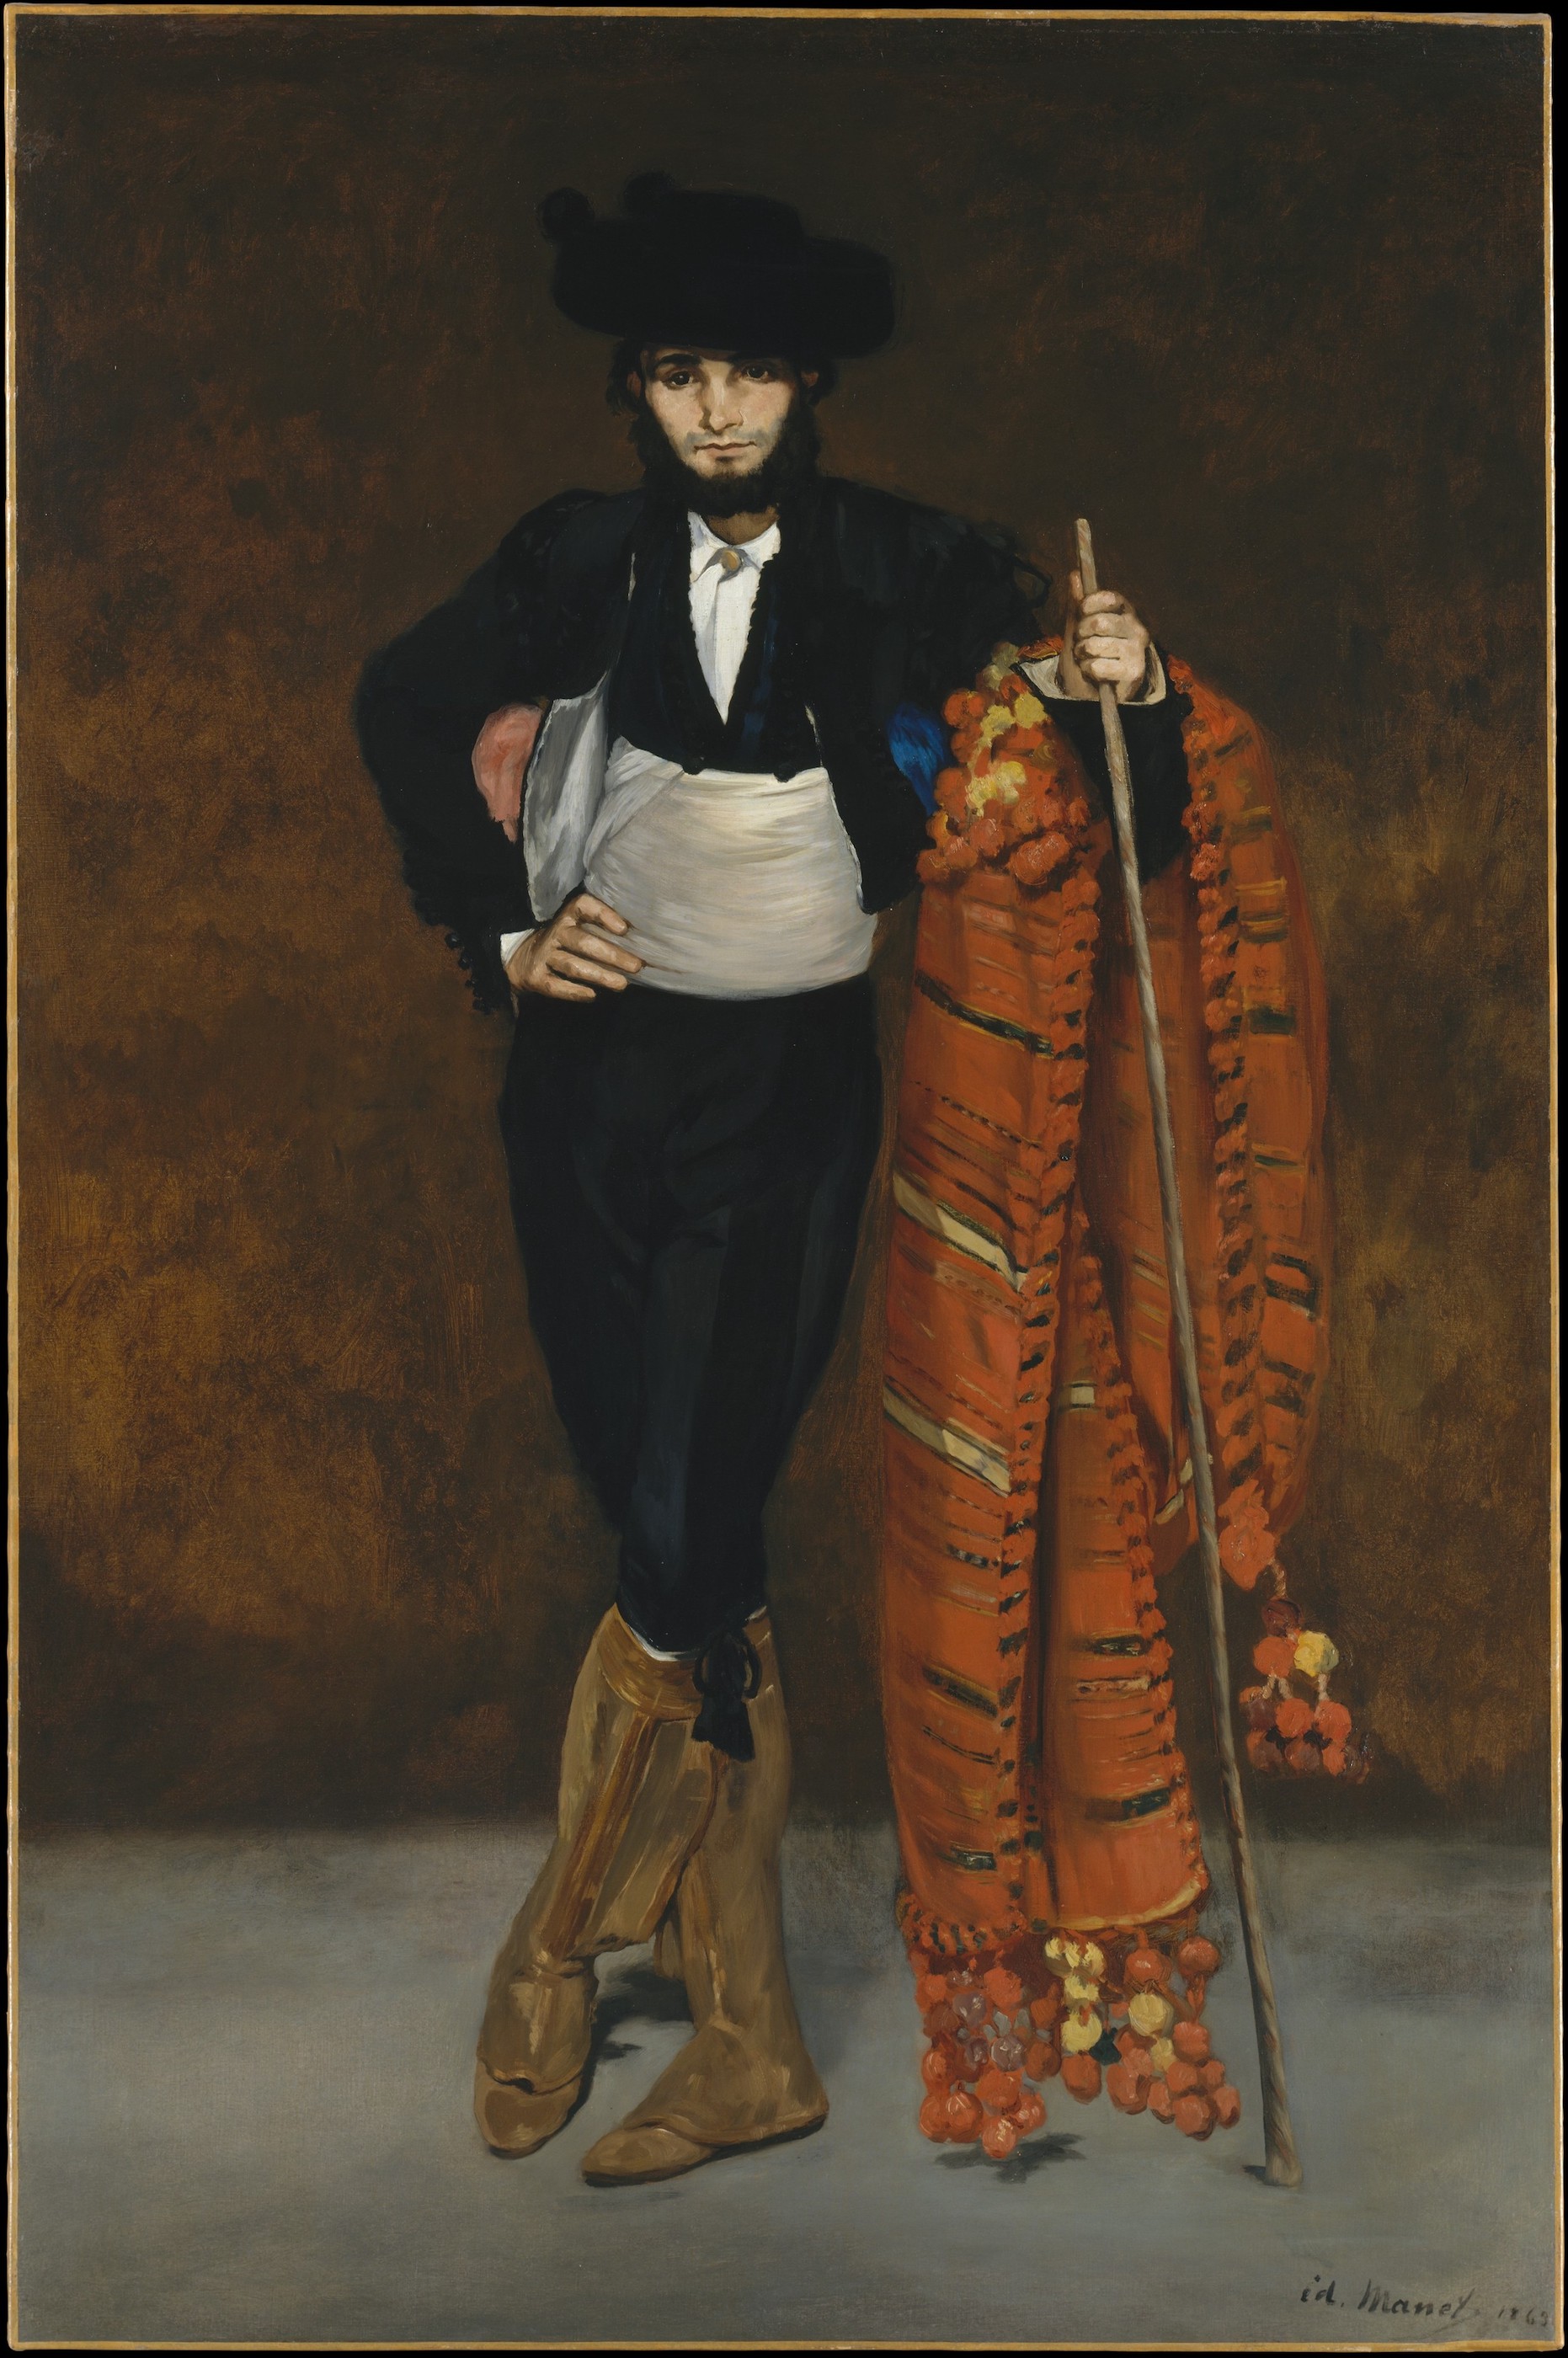 穿chu a拿主服的年輕男子 by Édouard Manet - 1863 - 188 x 124.8 cm 